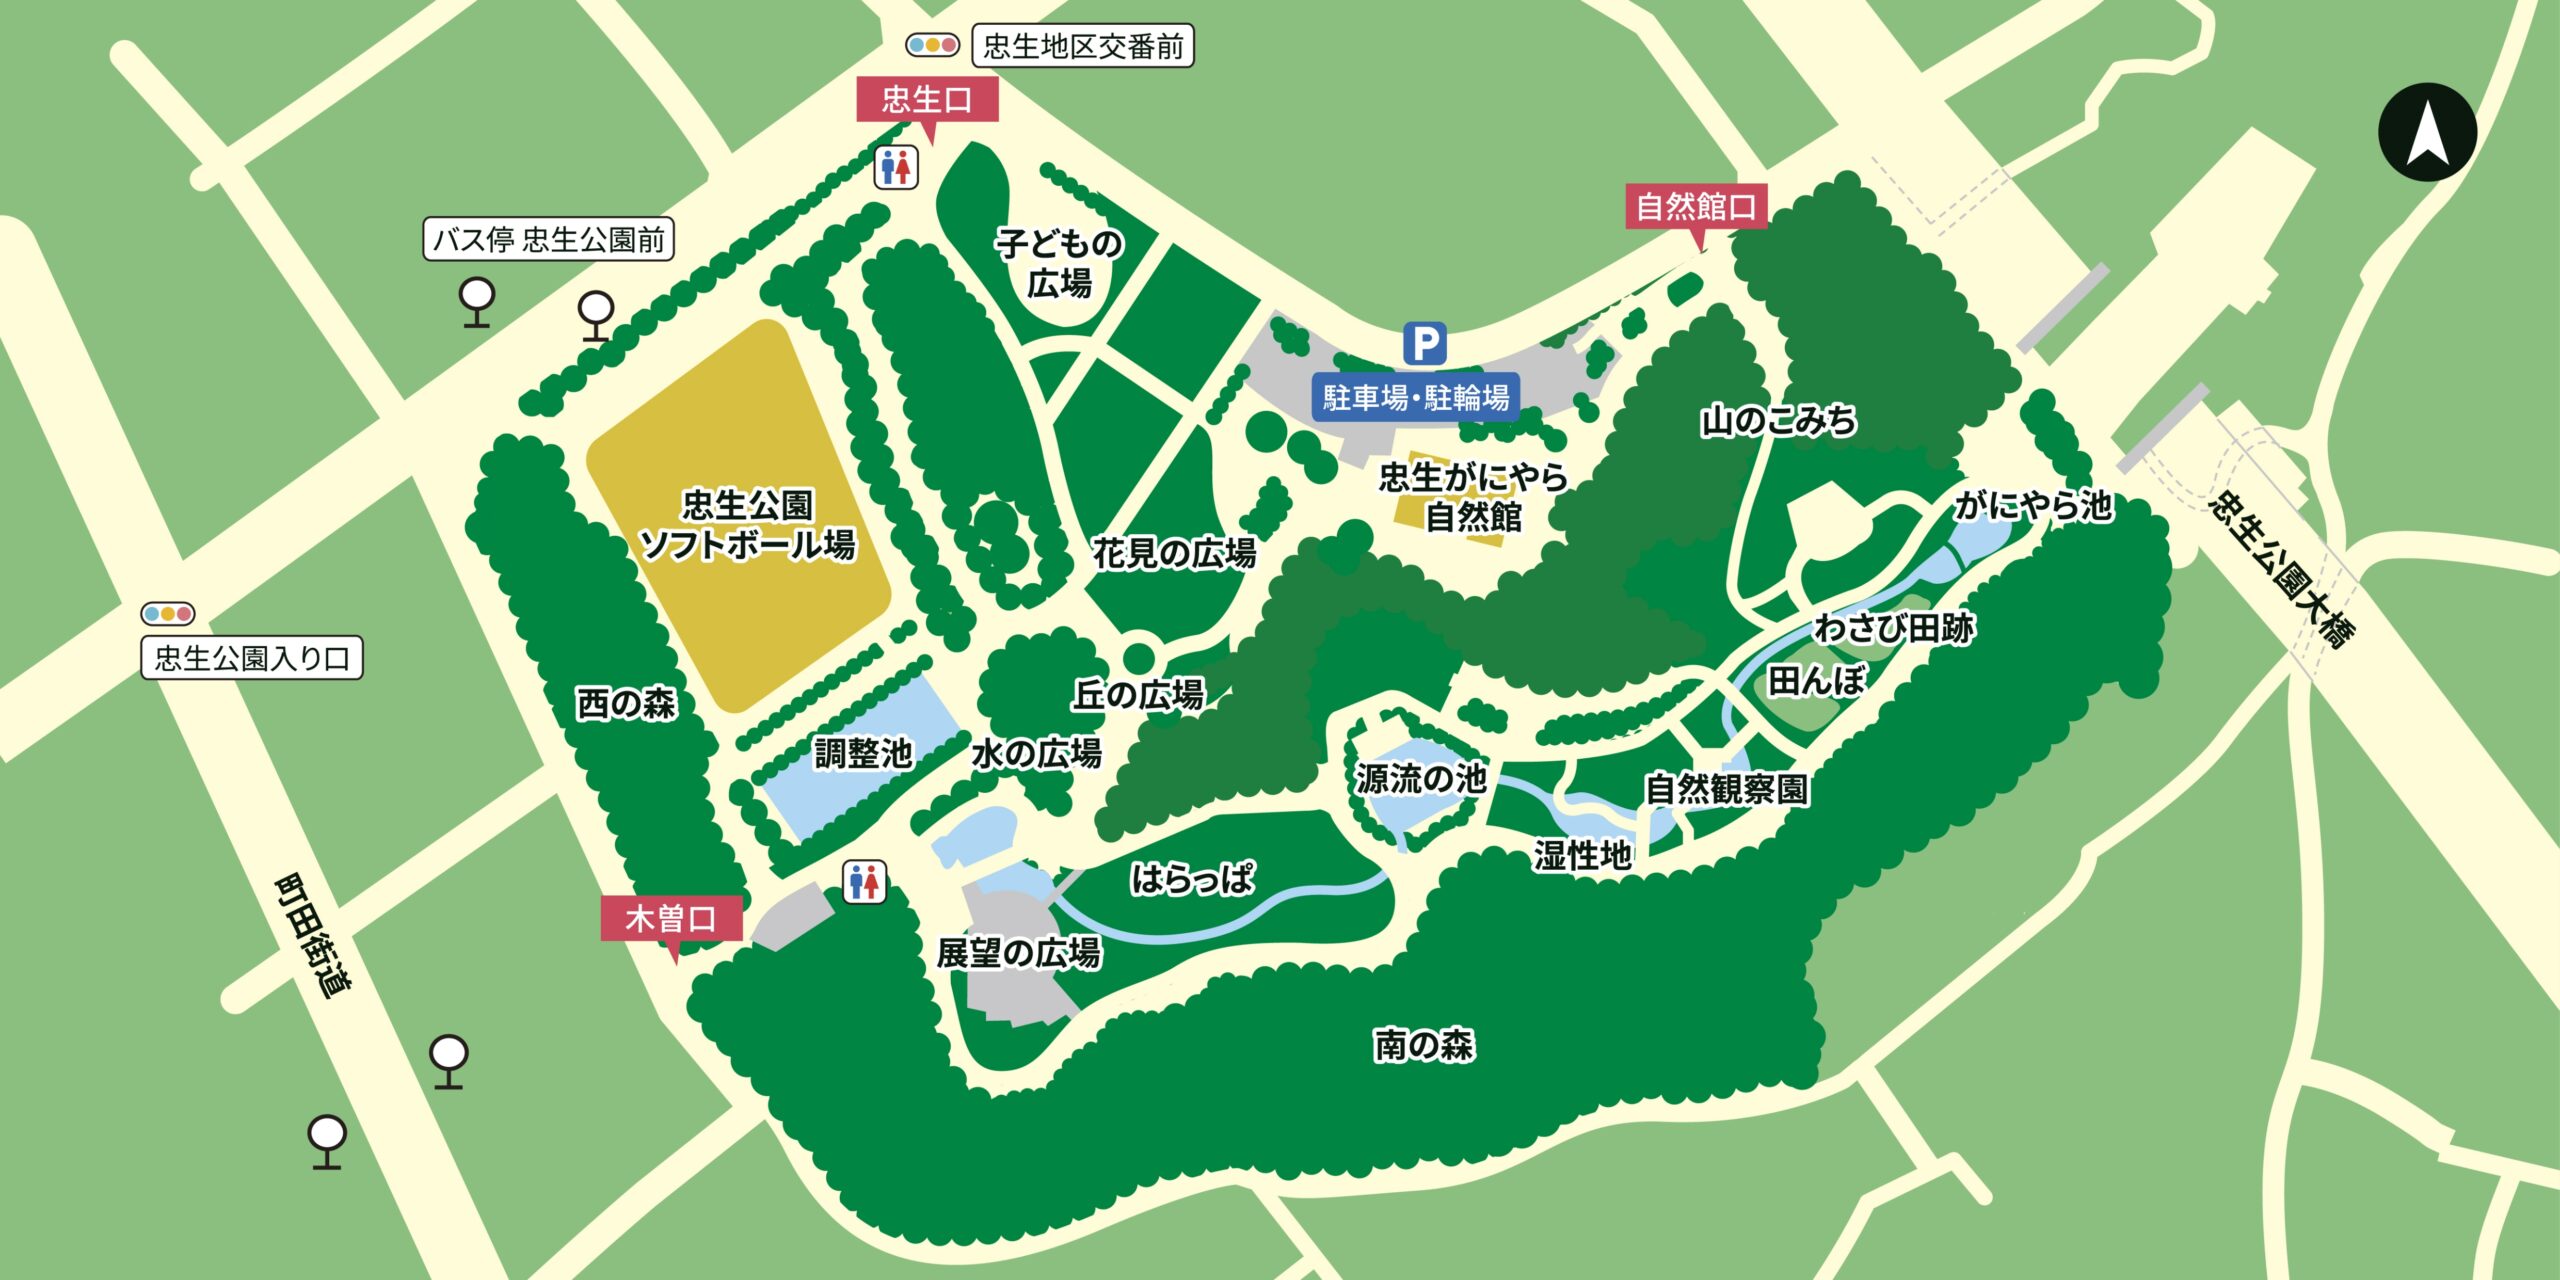 忠生公園の園内マップ